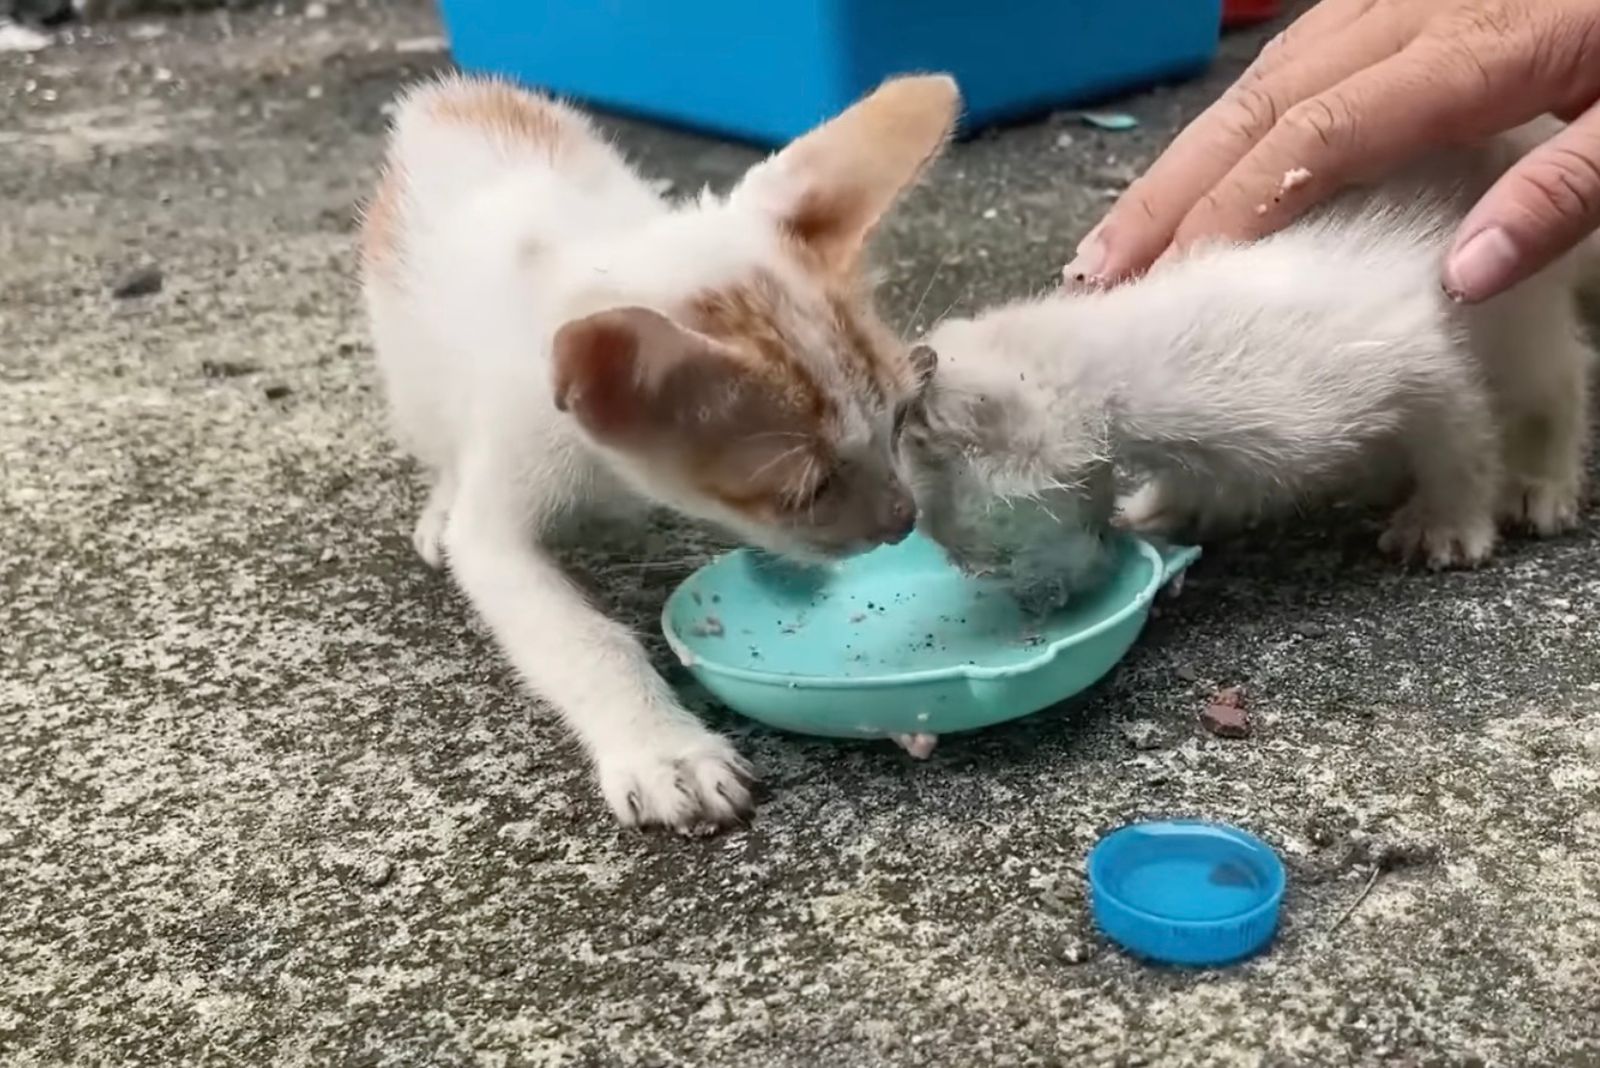 stray kittens eating